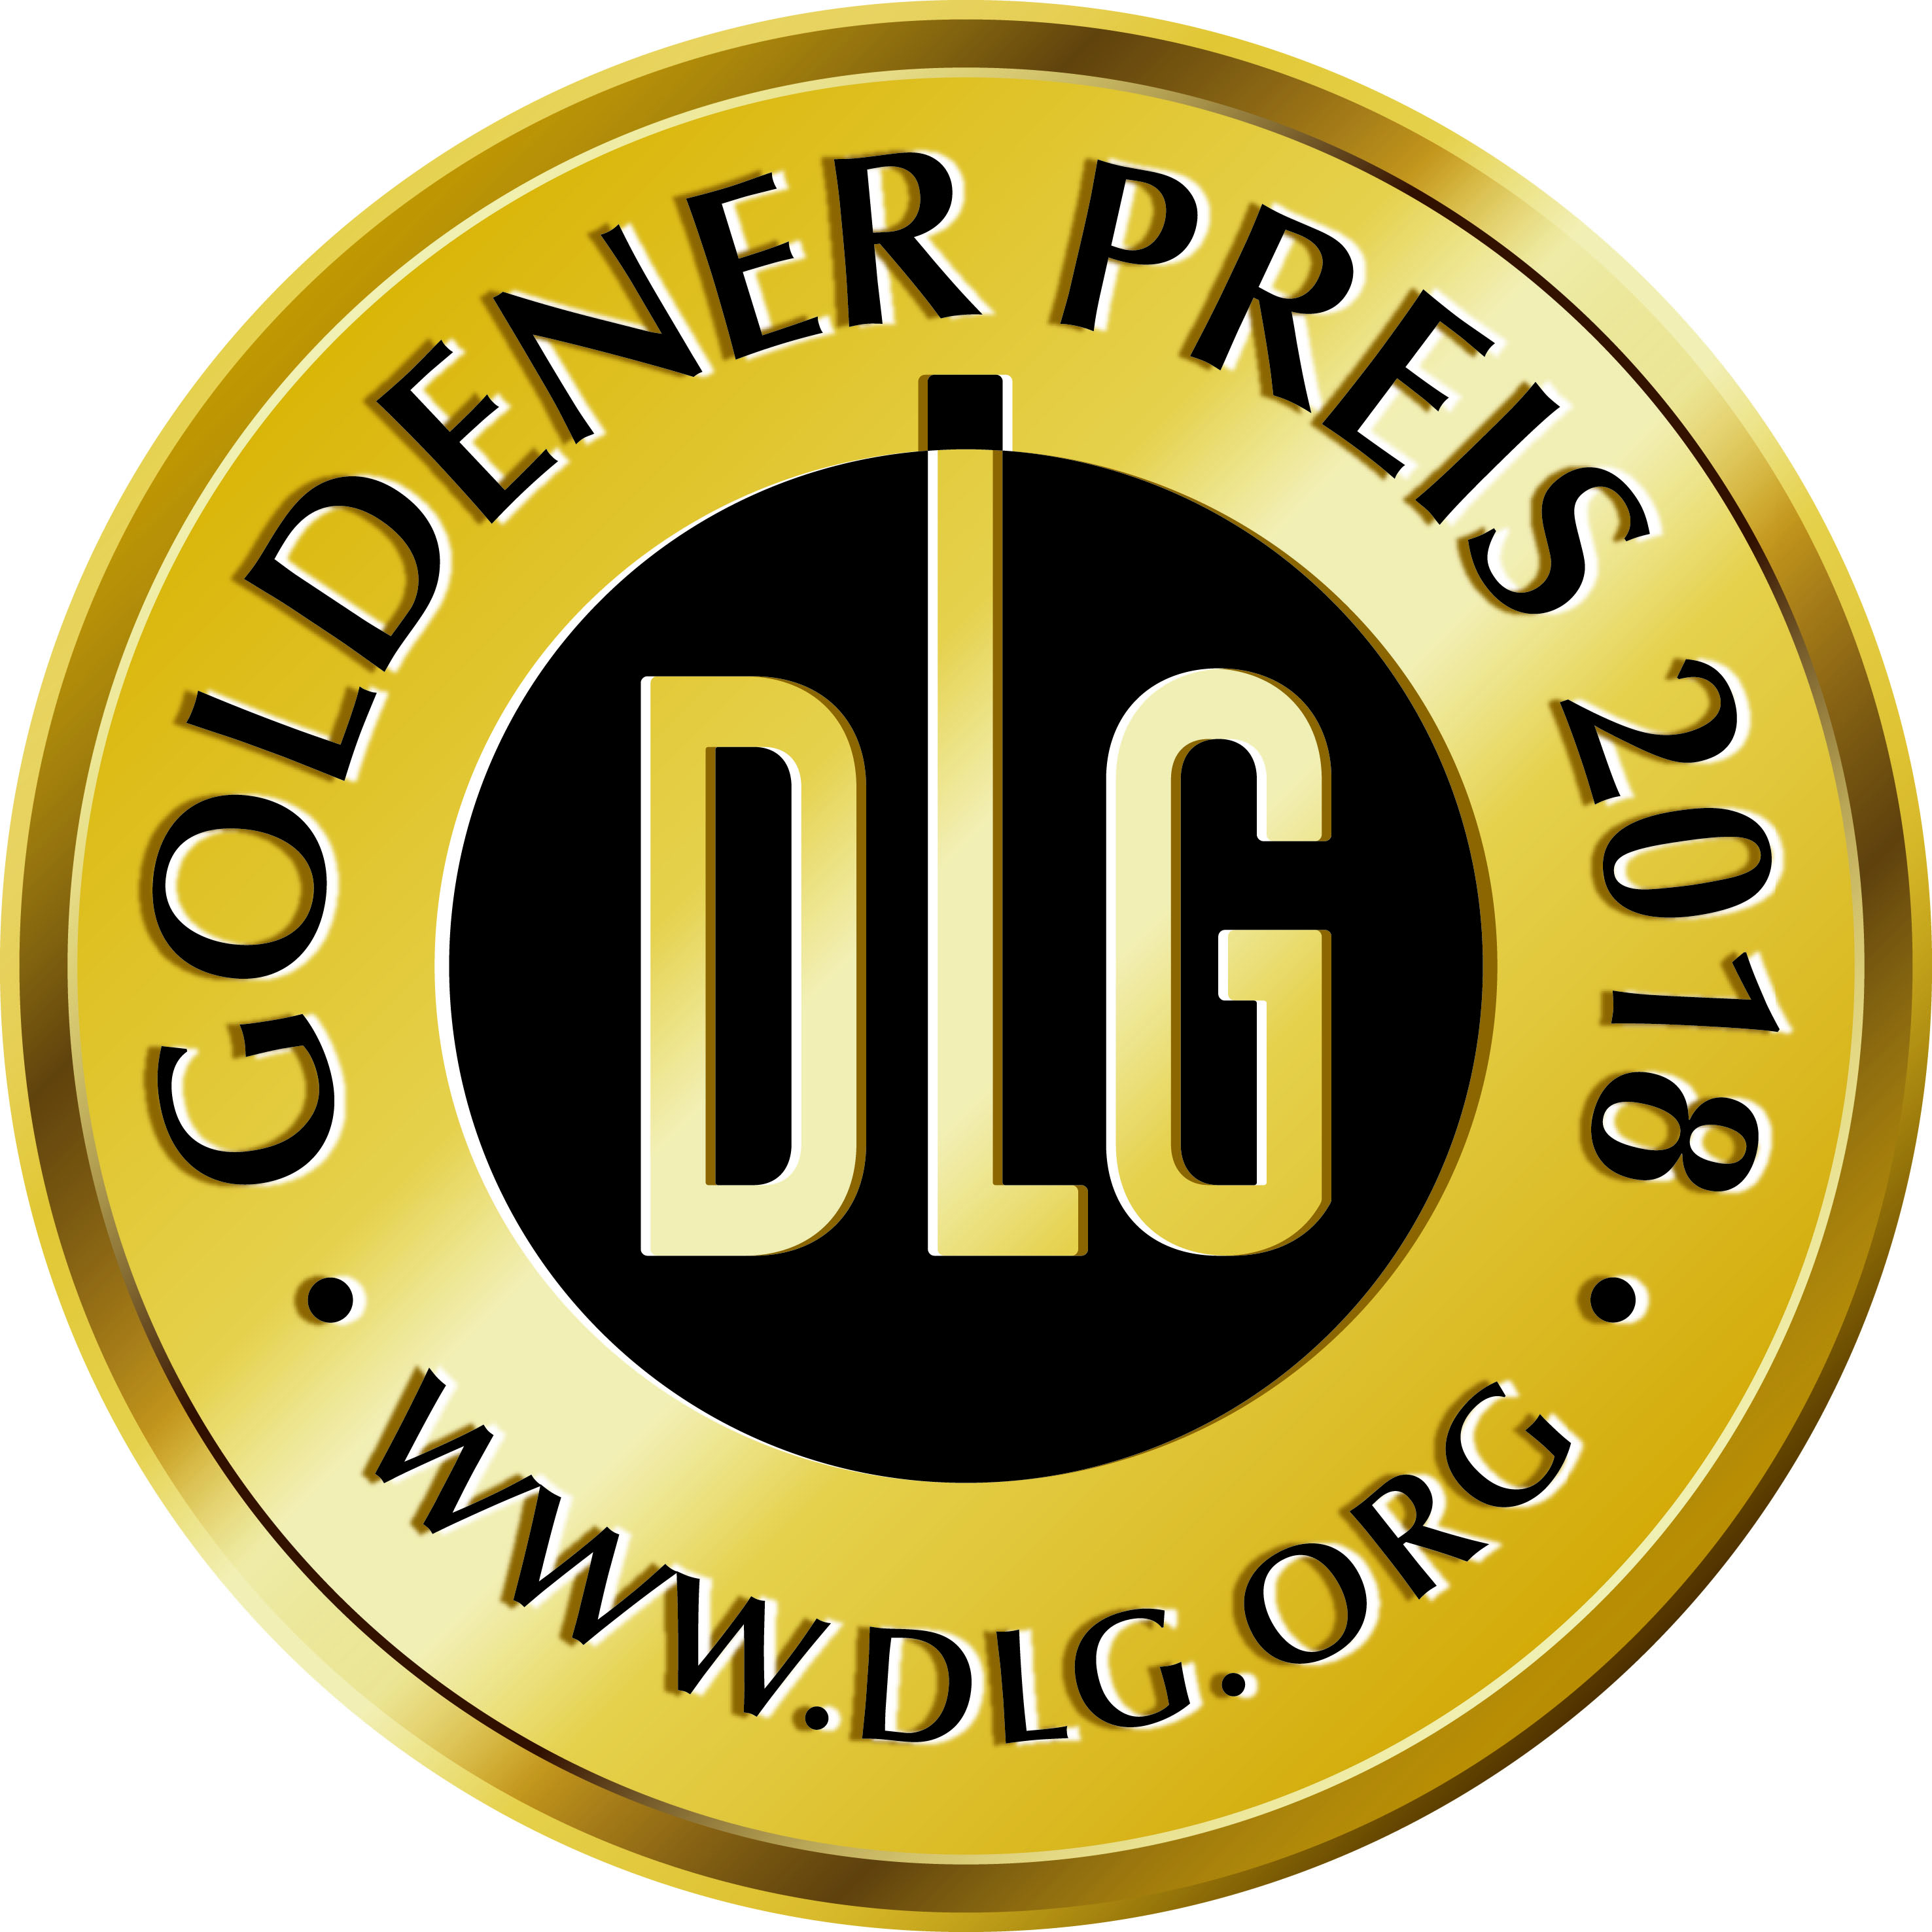 DLG Gold Meday 2018.jpg